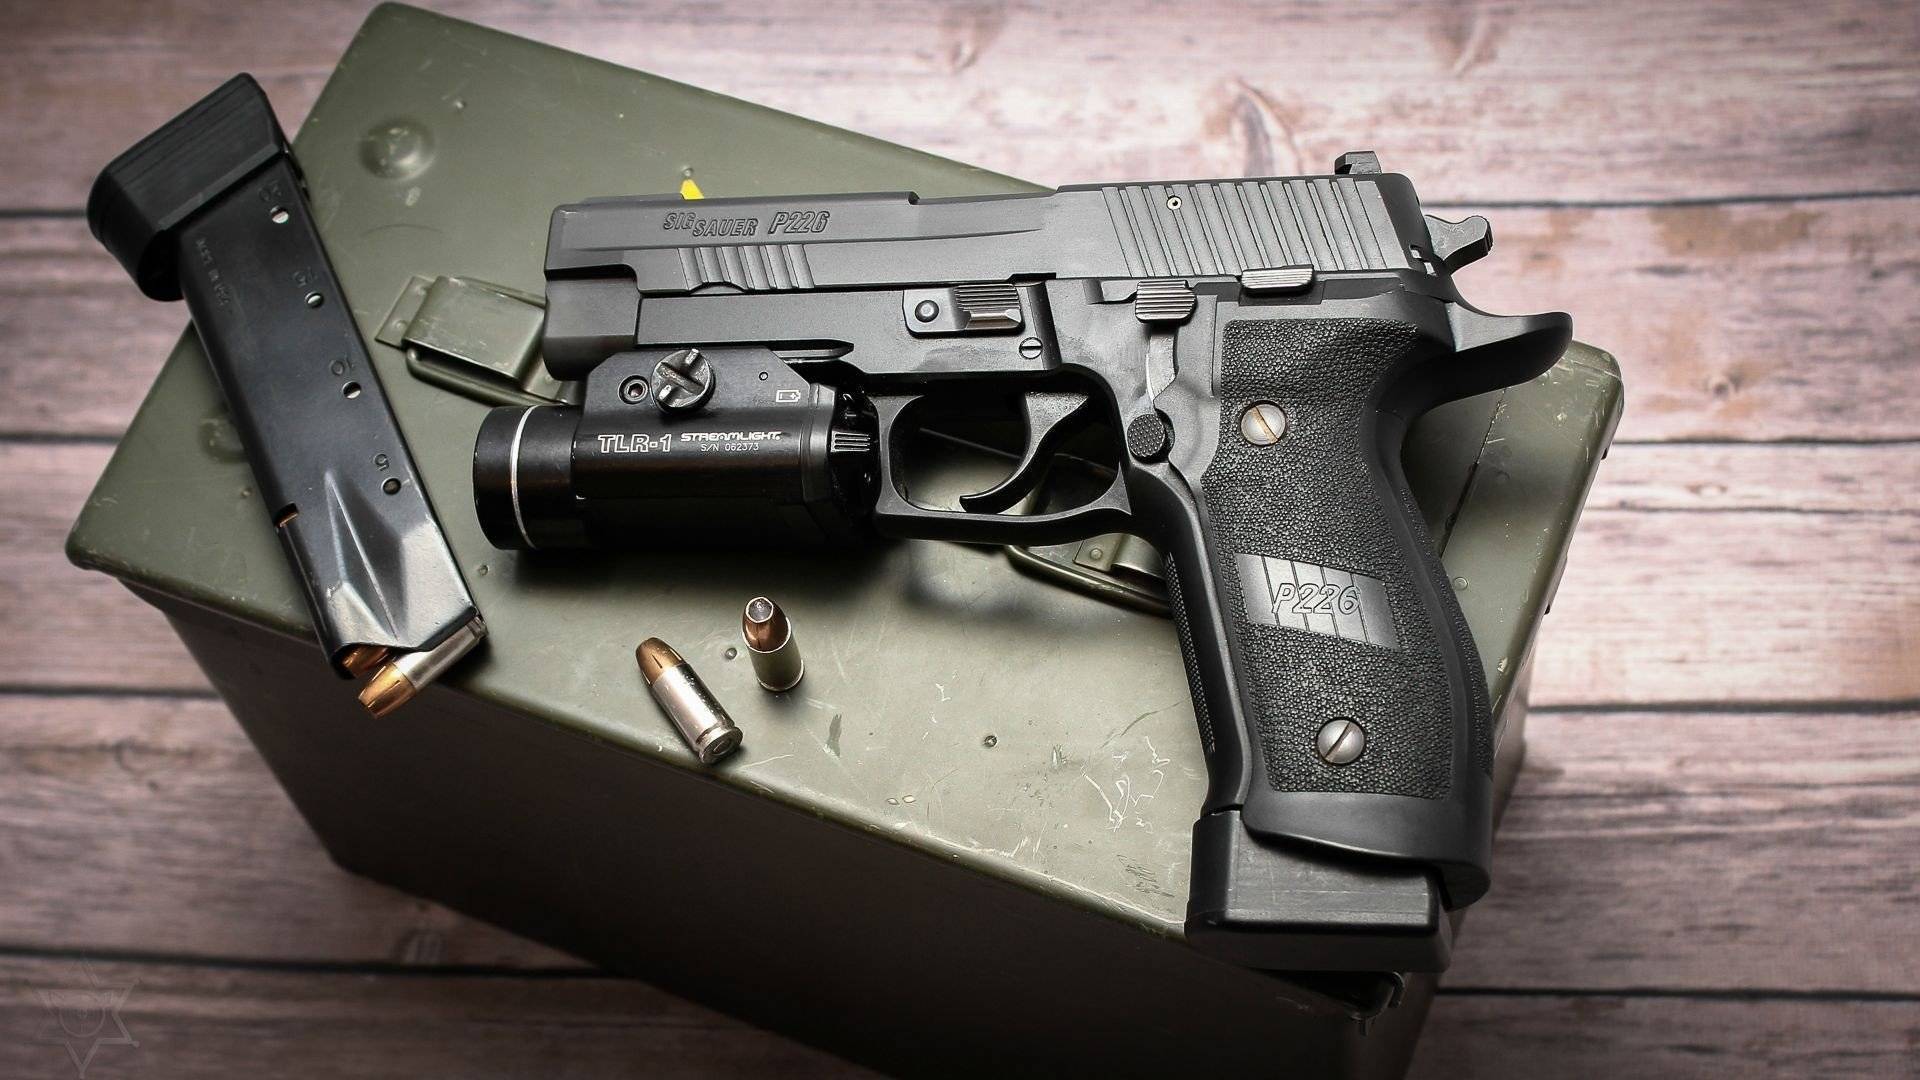 Пистолет sig-sauer p226 ттх. фото. видео. размеры. скорострельность. скорость пули. прицельная дальность. вес